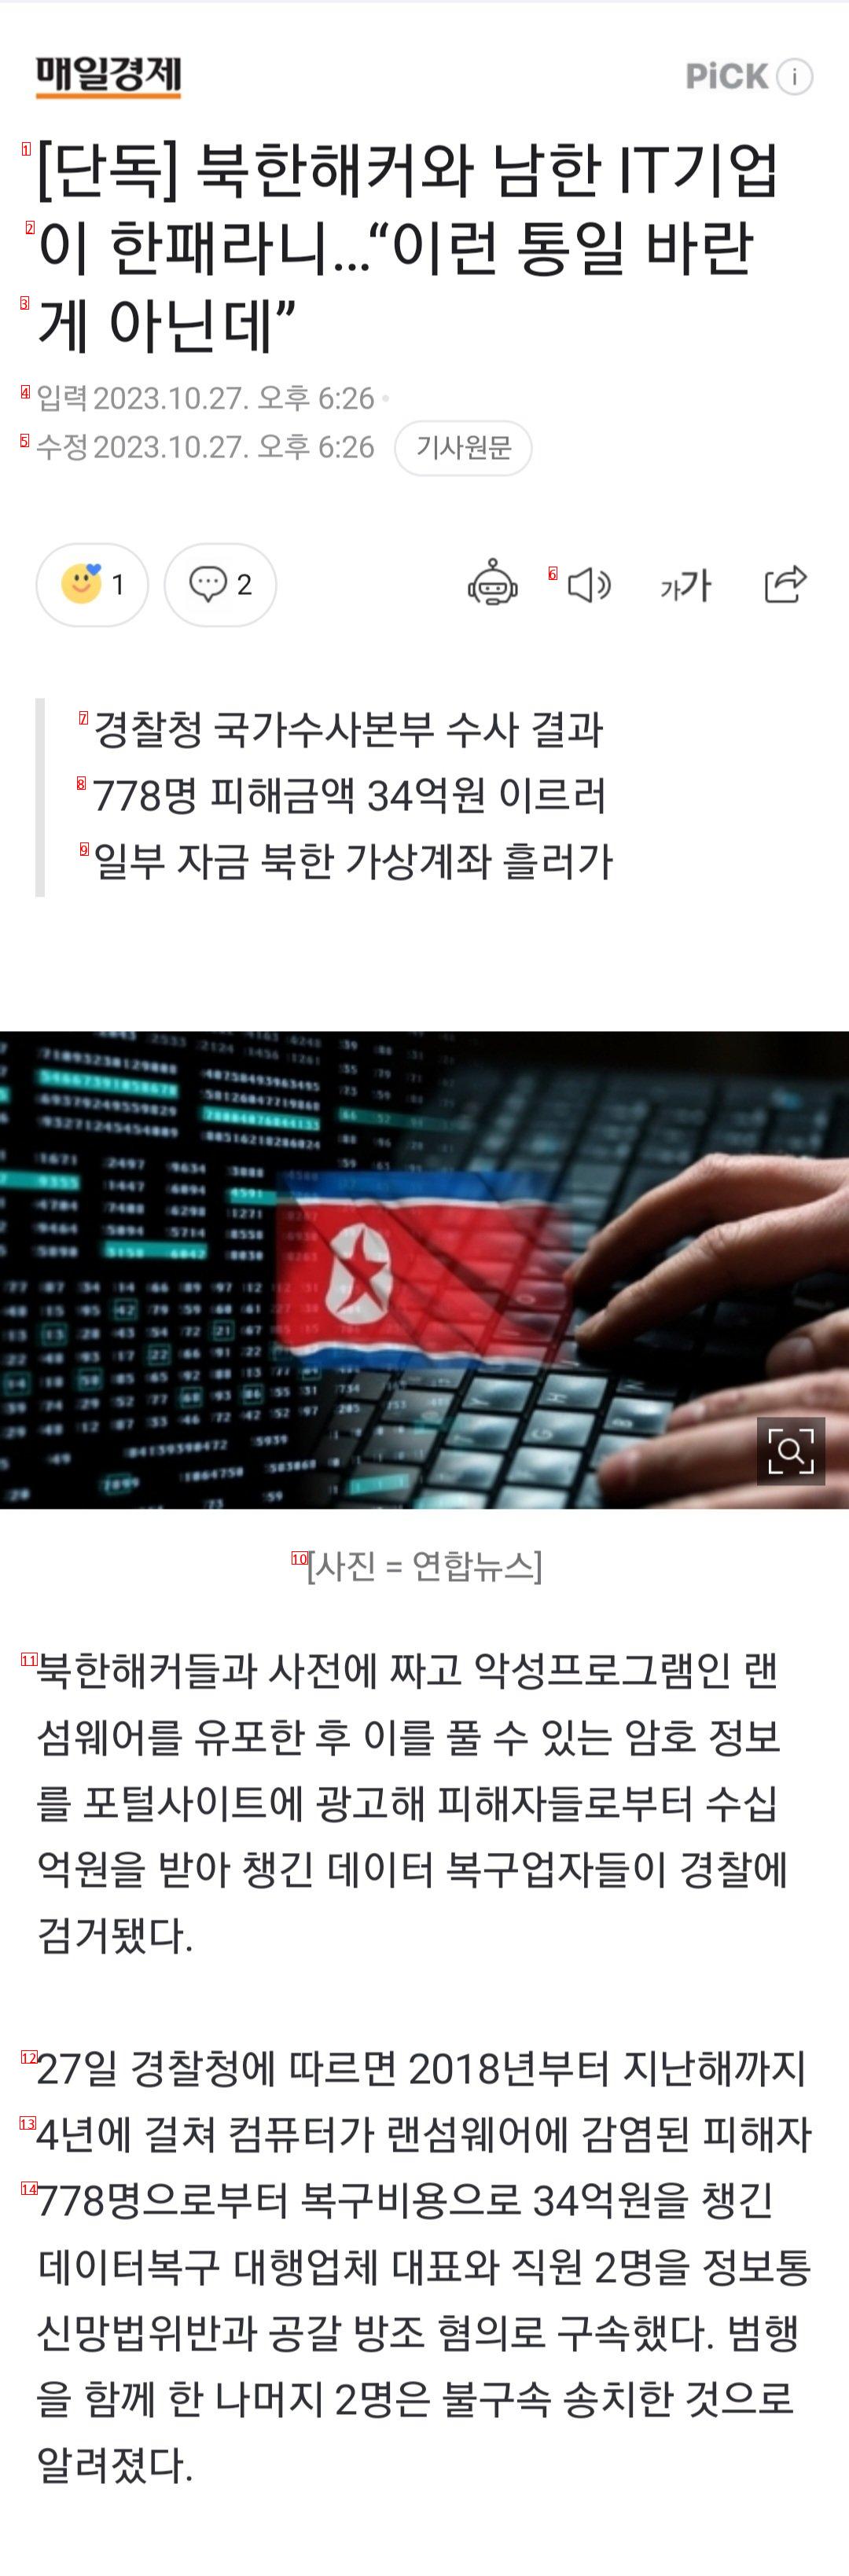 単独の北朝鮮ハッカーと韓国のIT企業が仲間だとは…···「こういう統一を望んだ訳じゃないのに」